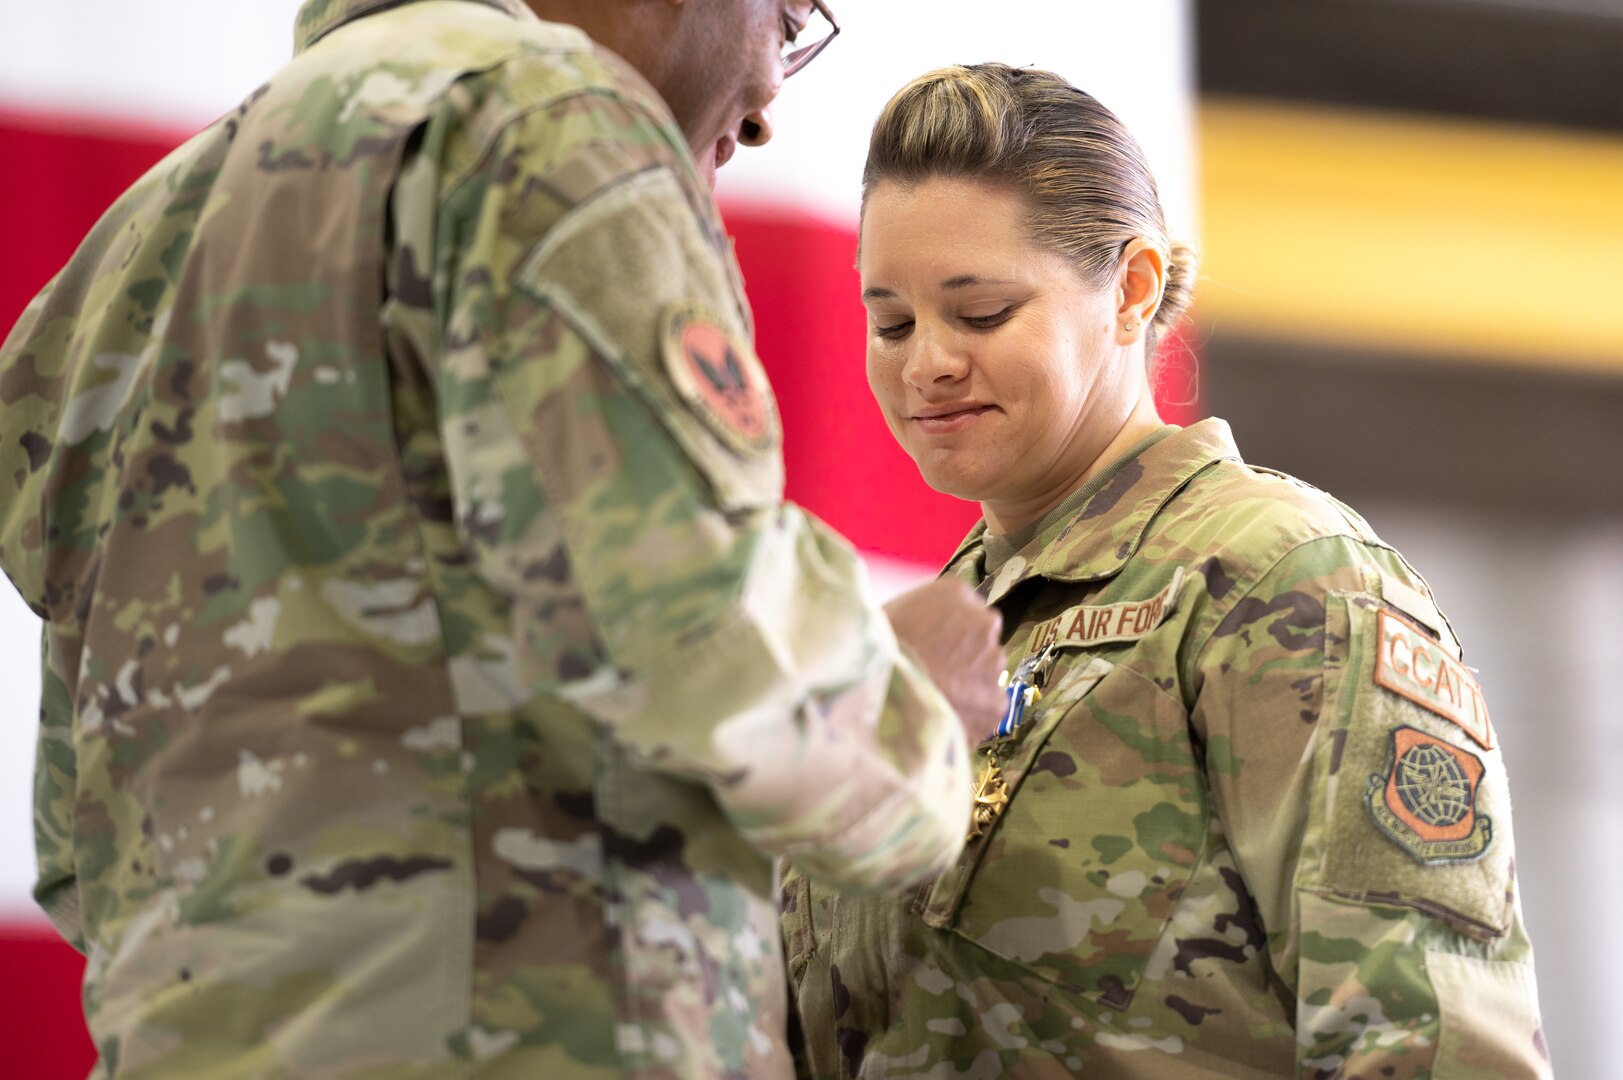 An Air Force leader pins a medal on an airman's uniform.